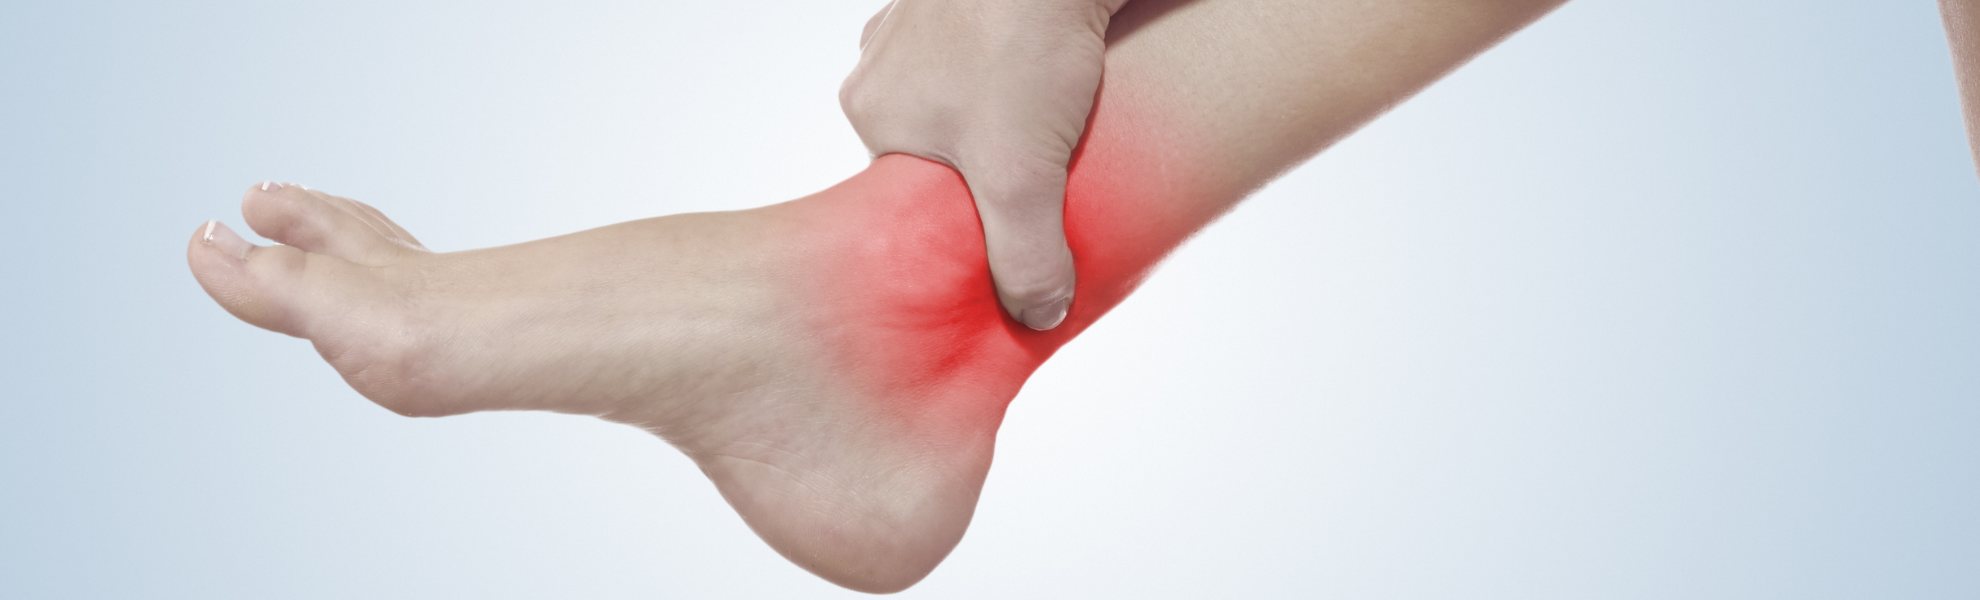 Dieta, ejercicio y calzado: ¿cómo evitar las lesiones en el tobillo?